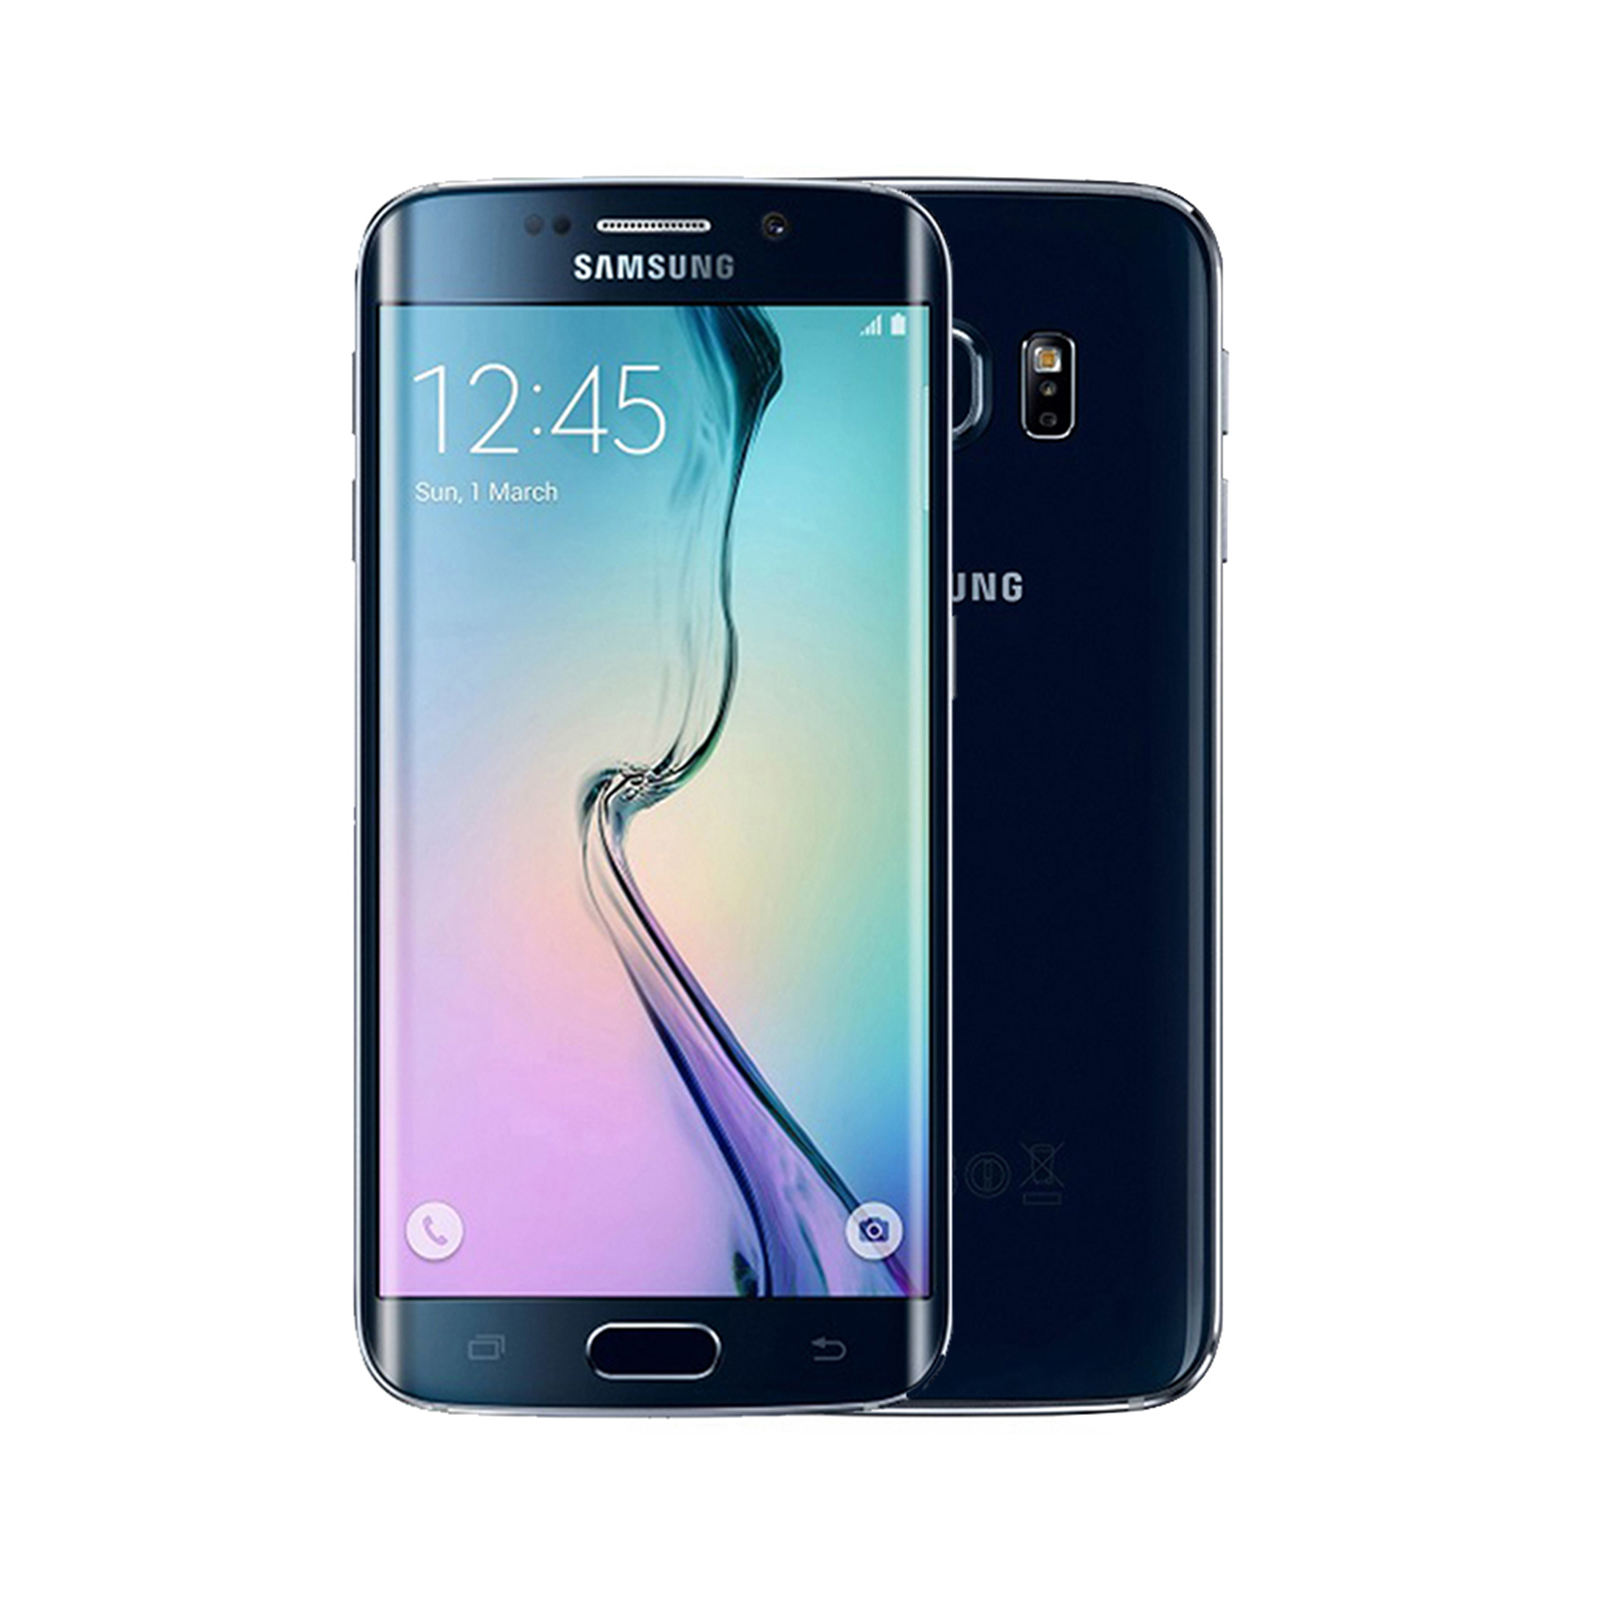 Samsung Galaxy S6 edge [64GB] [Black] [Very Good]